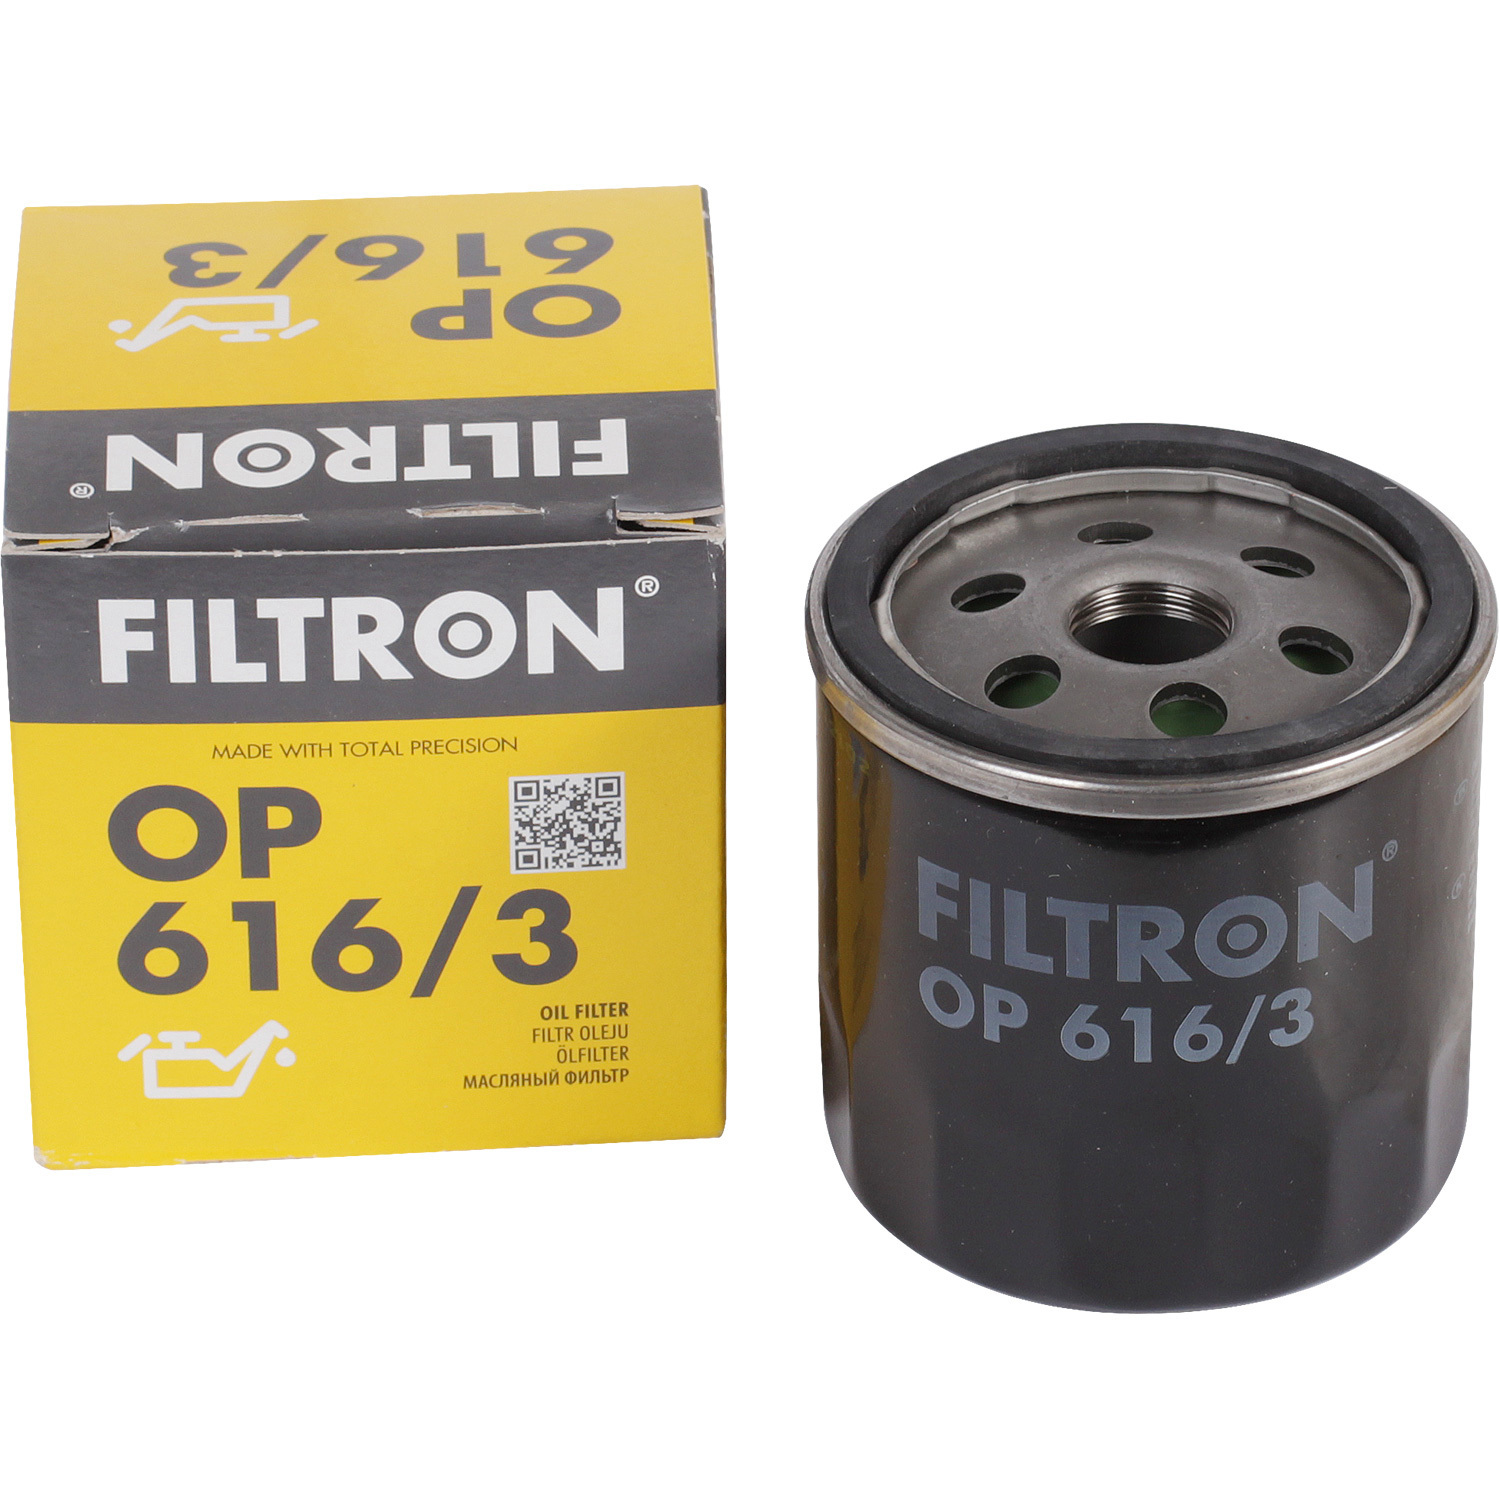 Фильтры Filtron Фильтр масляный Filtron OP6163 фильтры filtron фильтр масляный filtron oe6856